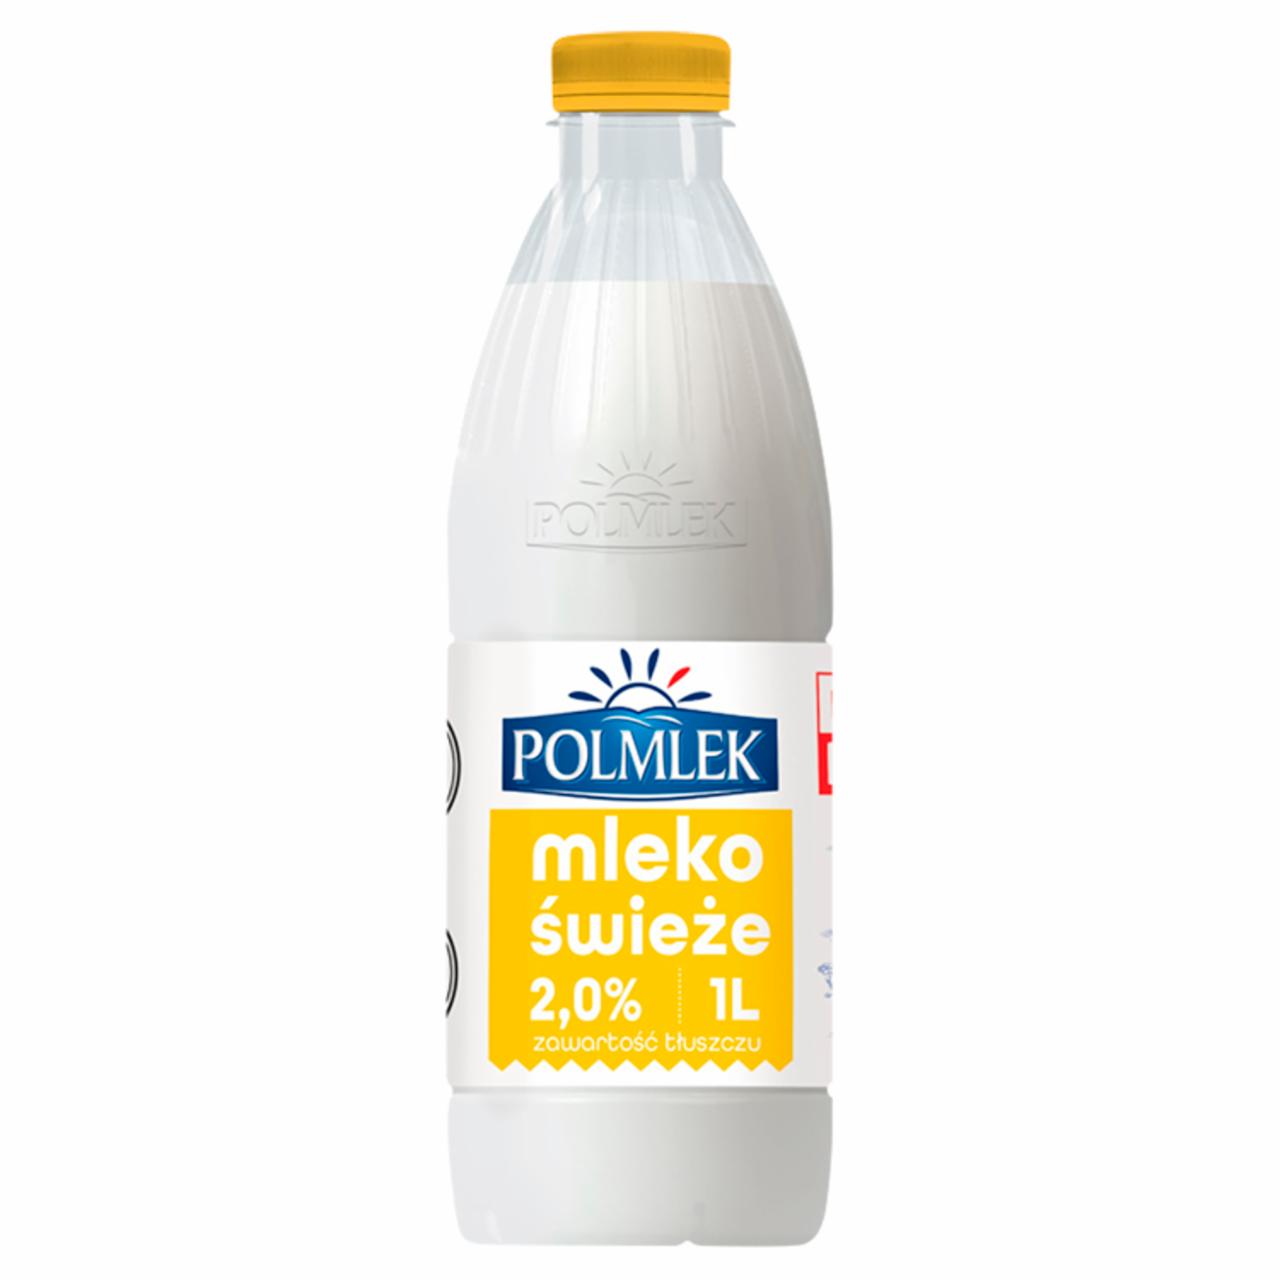 Zdjęcia - Polmlek Mleko świeże 2,0% 1 l